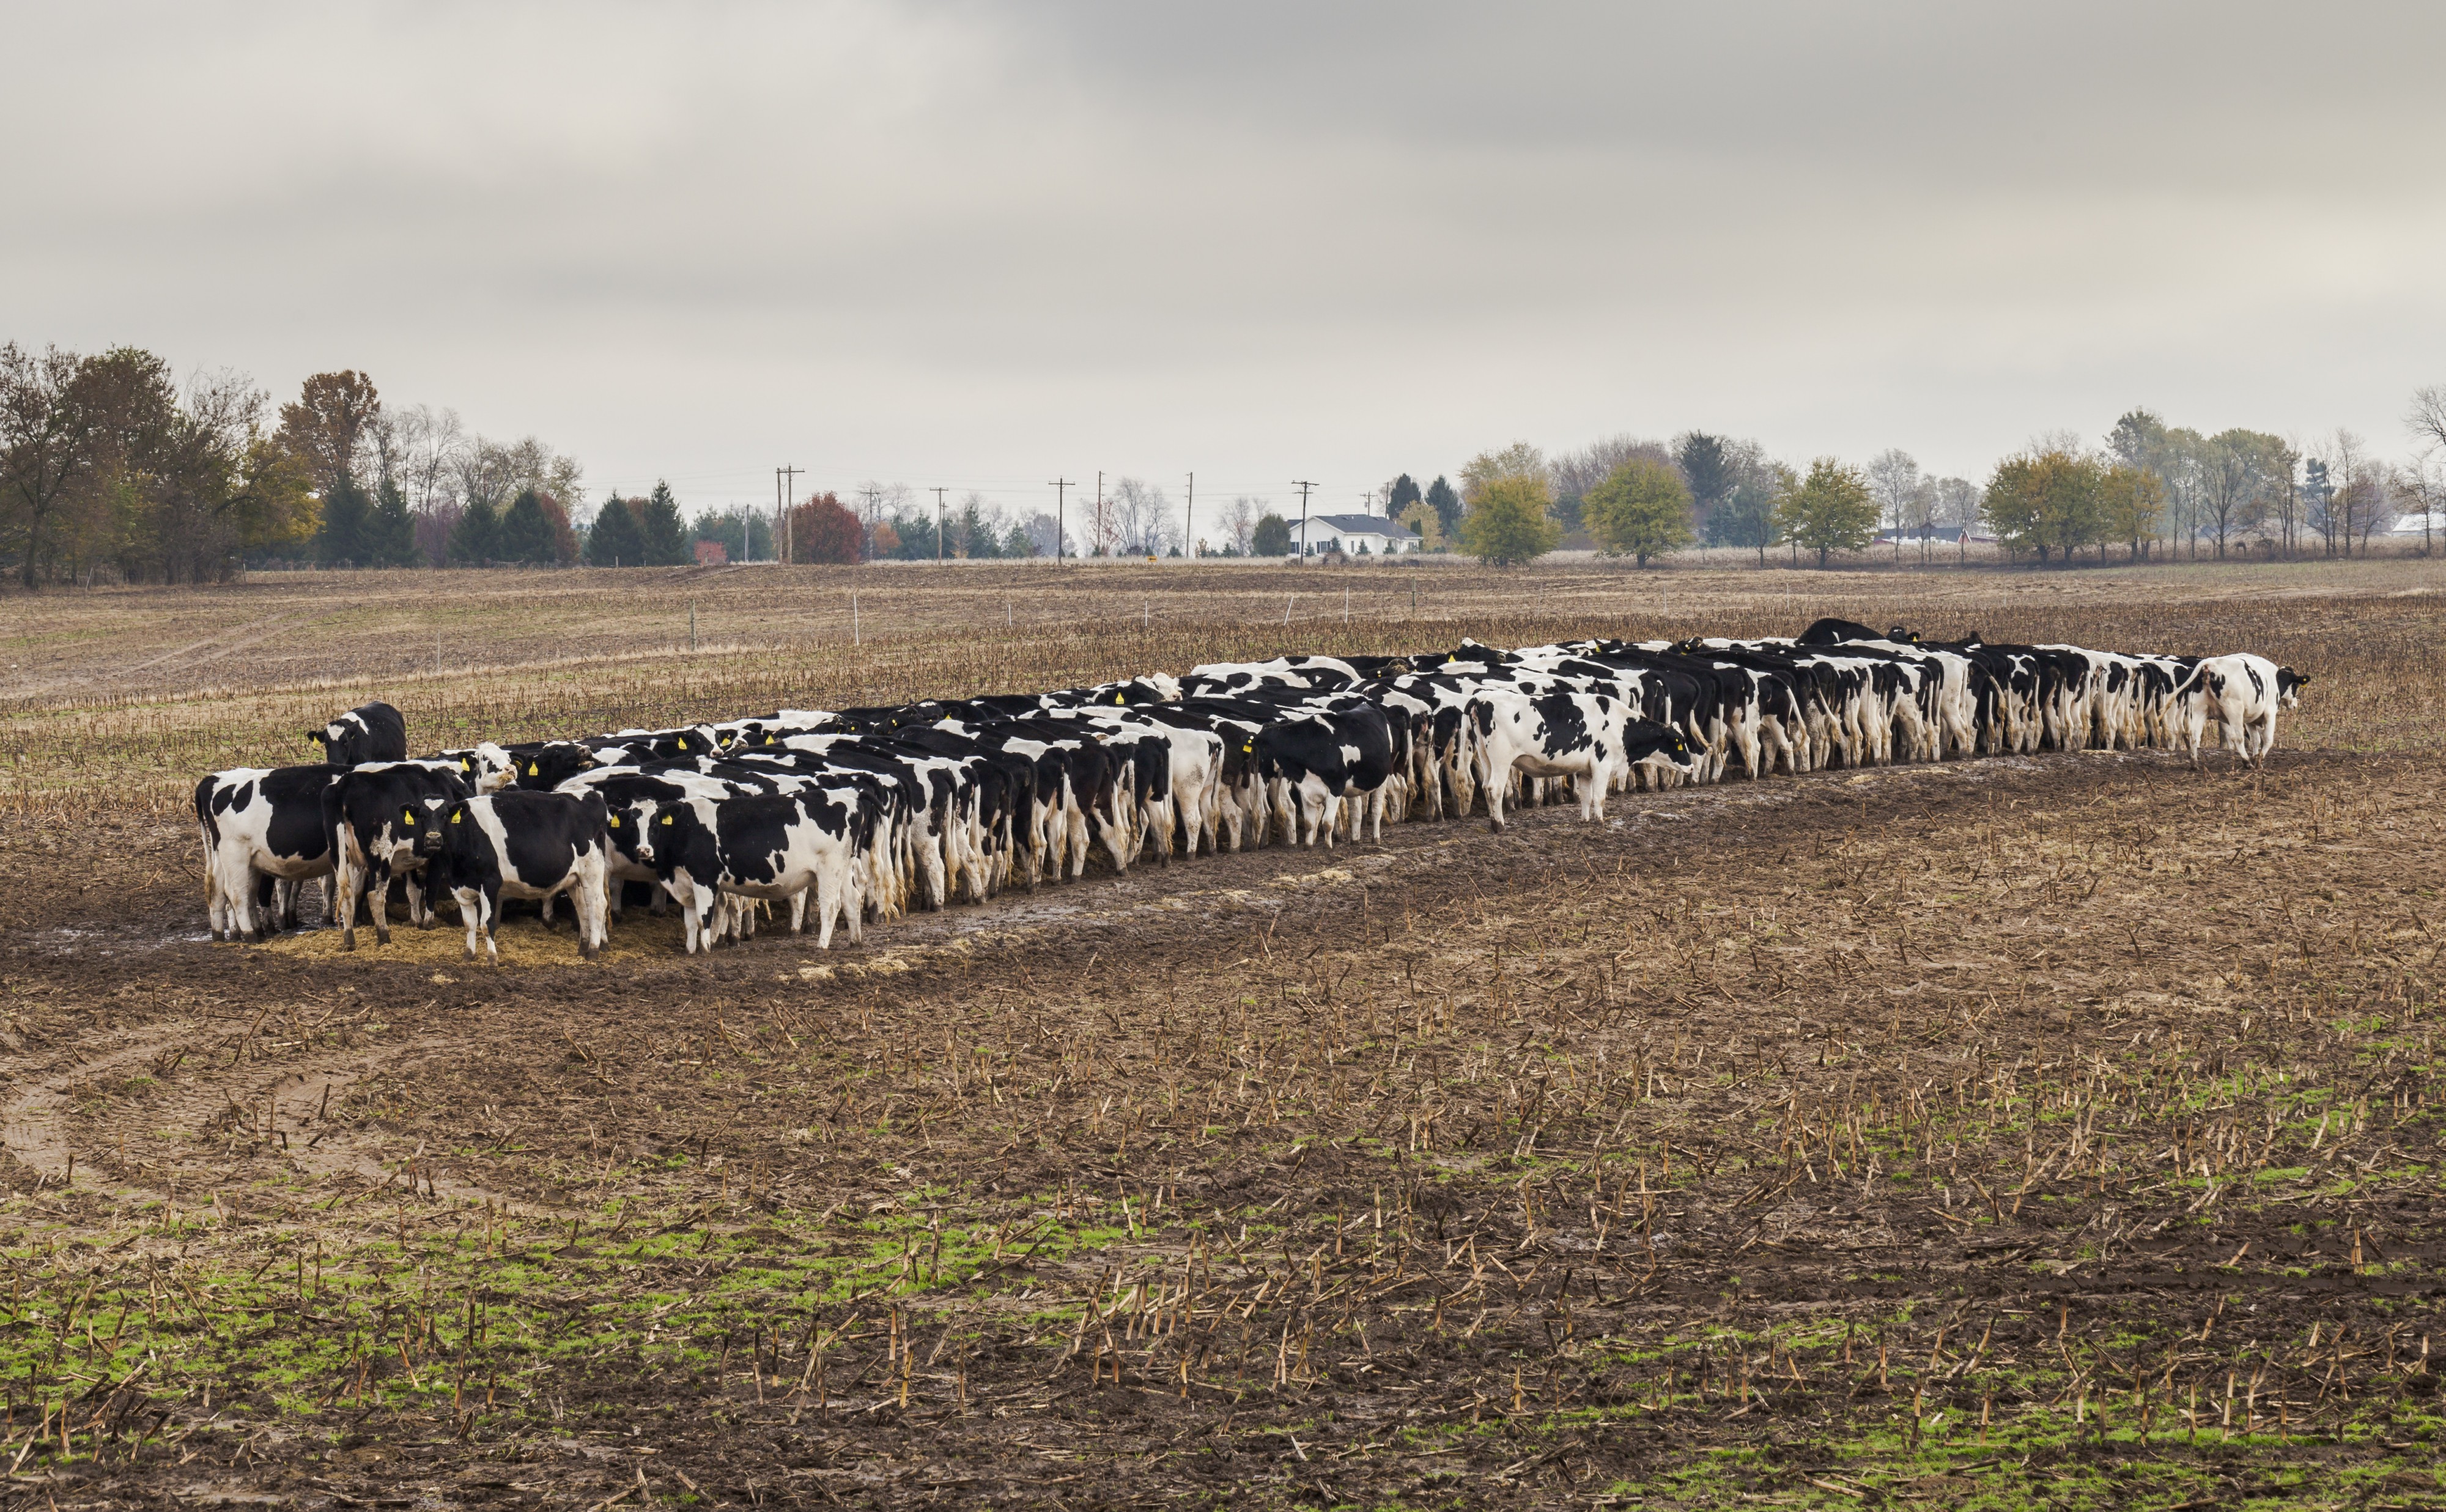 Vacas comiendo pienso, Kokomo, Indiana, Estados Unidos, 2012-10-20, DD 01